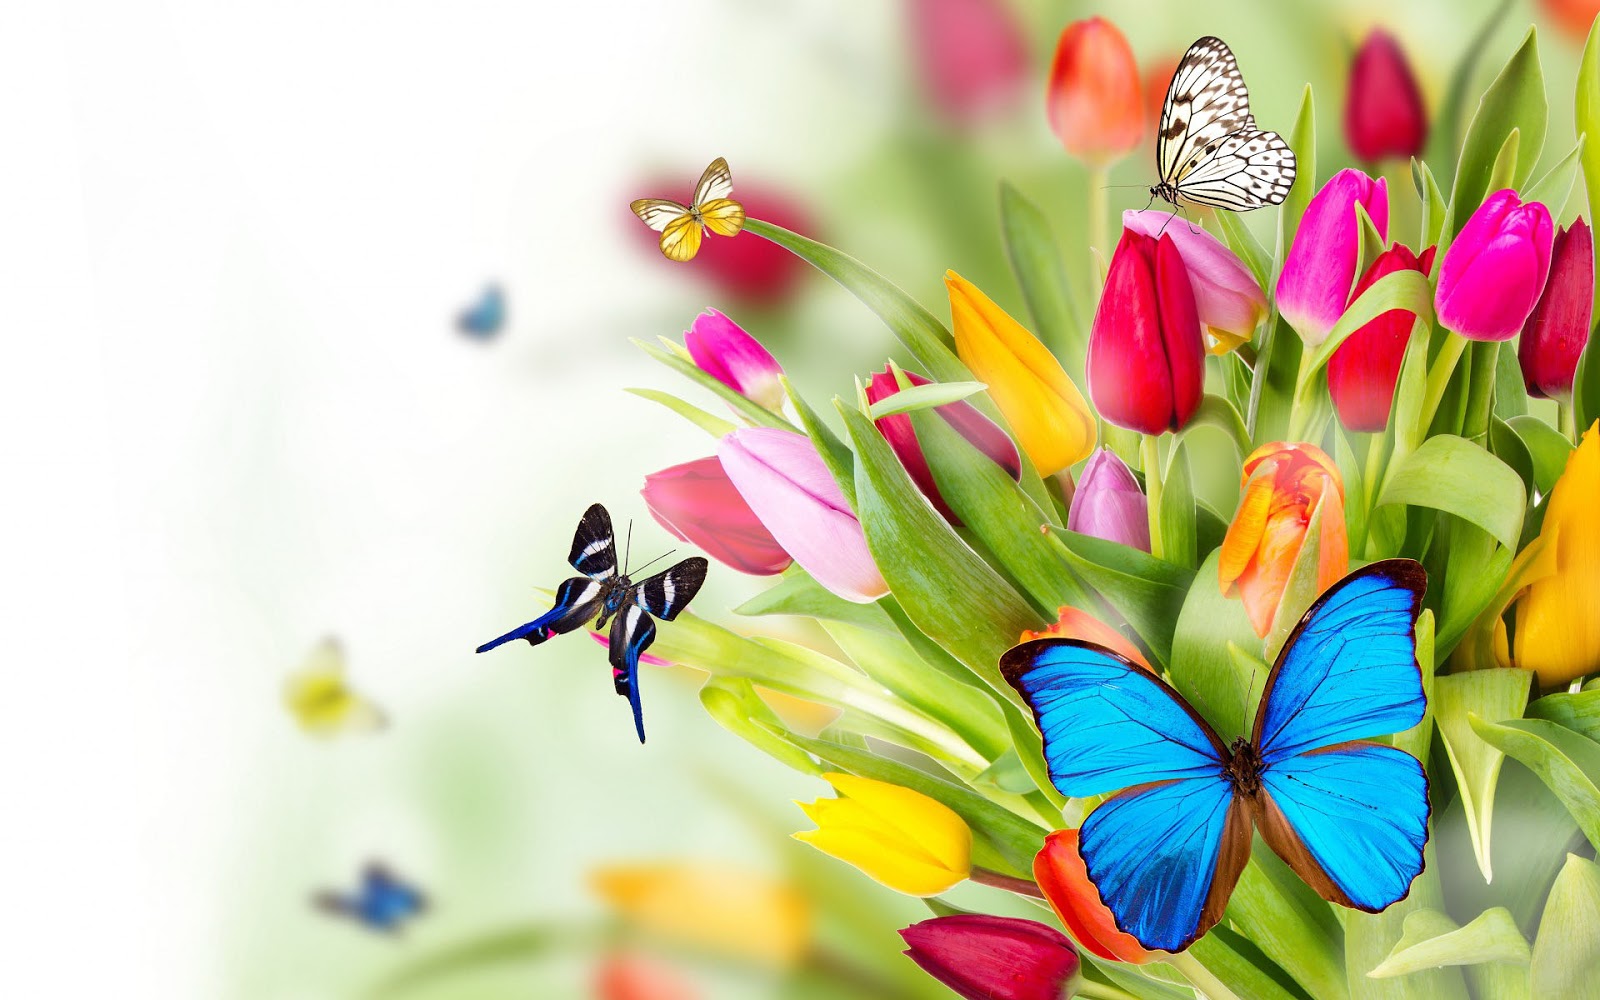 http://1.bp.blogspot.com/-8jn0OJQILEw/UURwoDVJ1iI/AAAAAAAAOLM/WIkXkLSgoEQ/s1600/lente-achtergrond-met-tulpen-en-vlinders.jpg